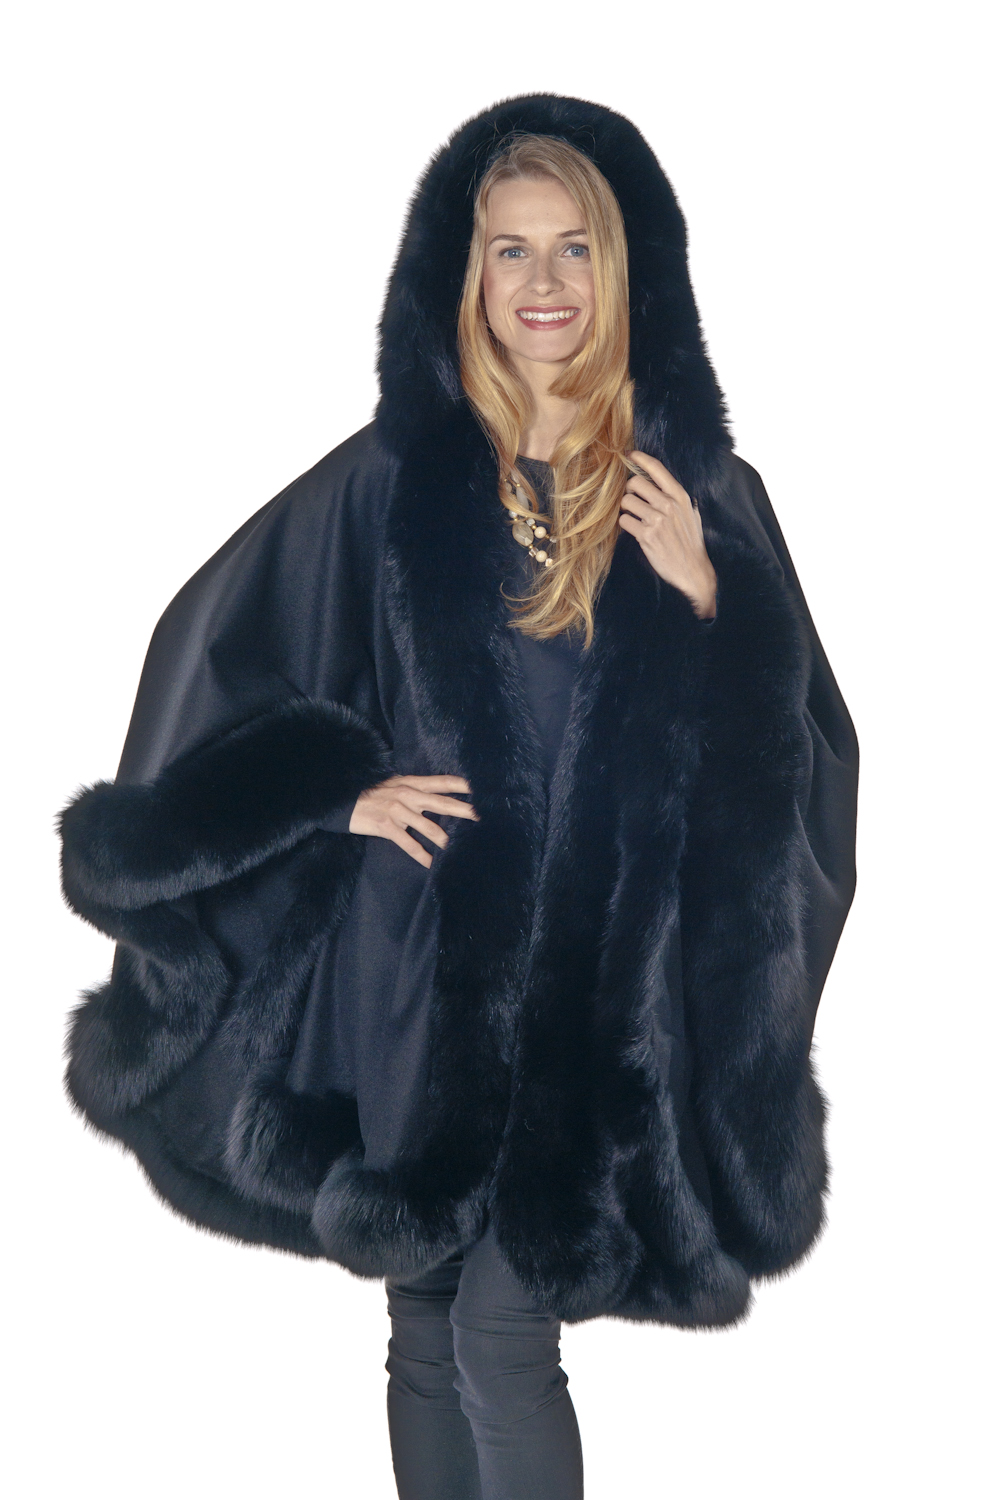 Black Plus Size Cashmere Cape – Detachable Hood – Madison Avenue Mall Furs